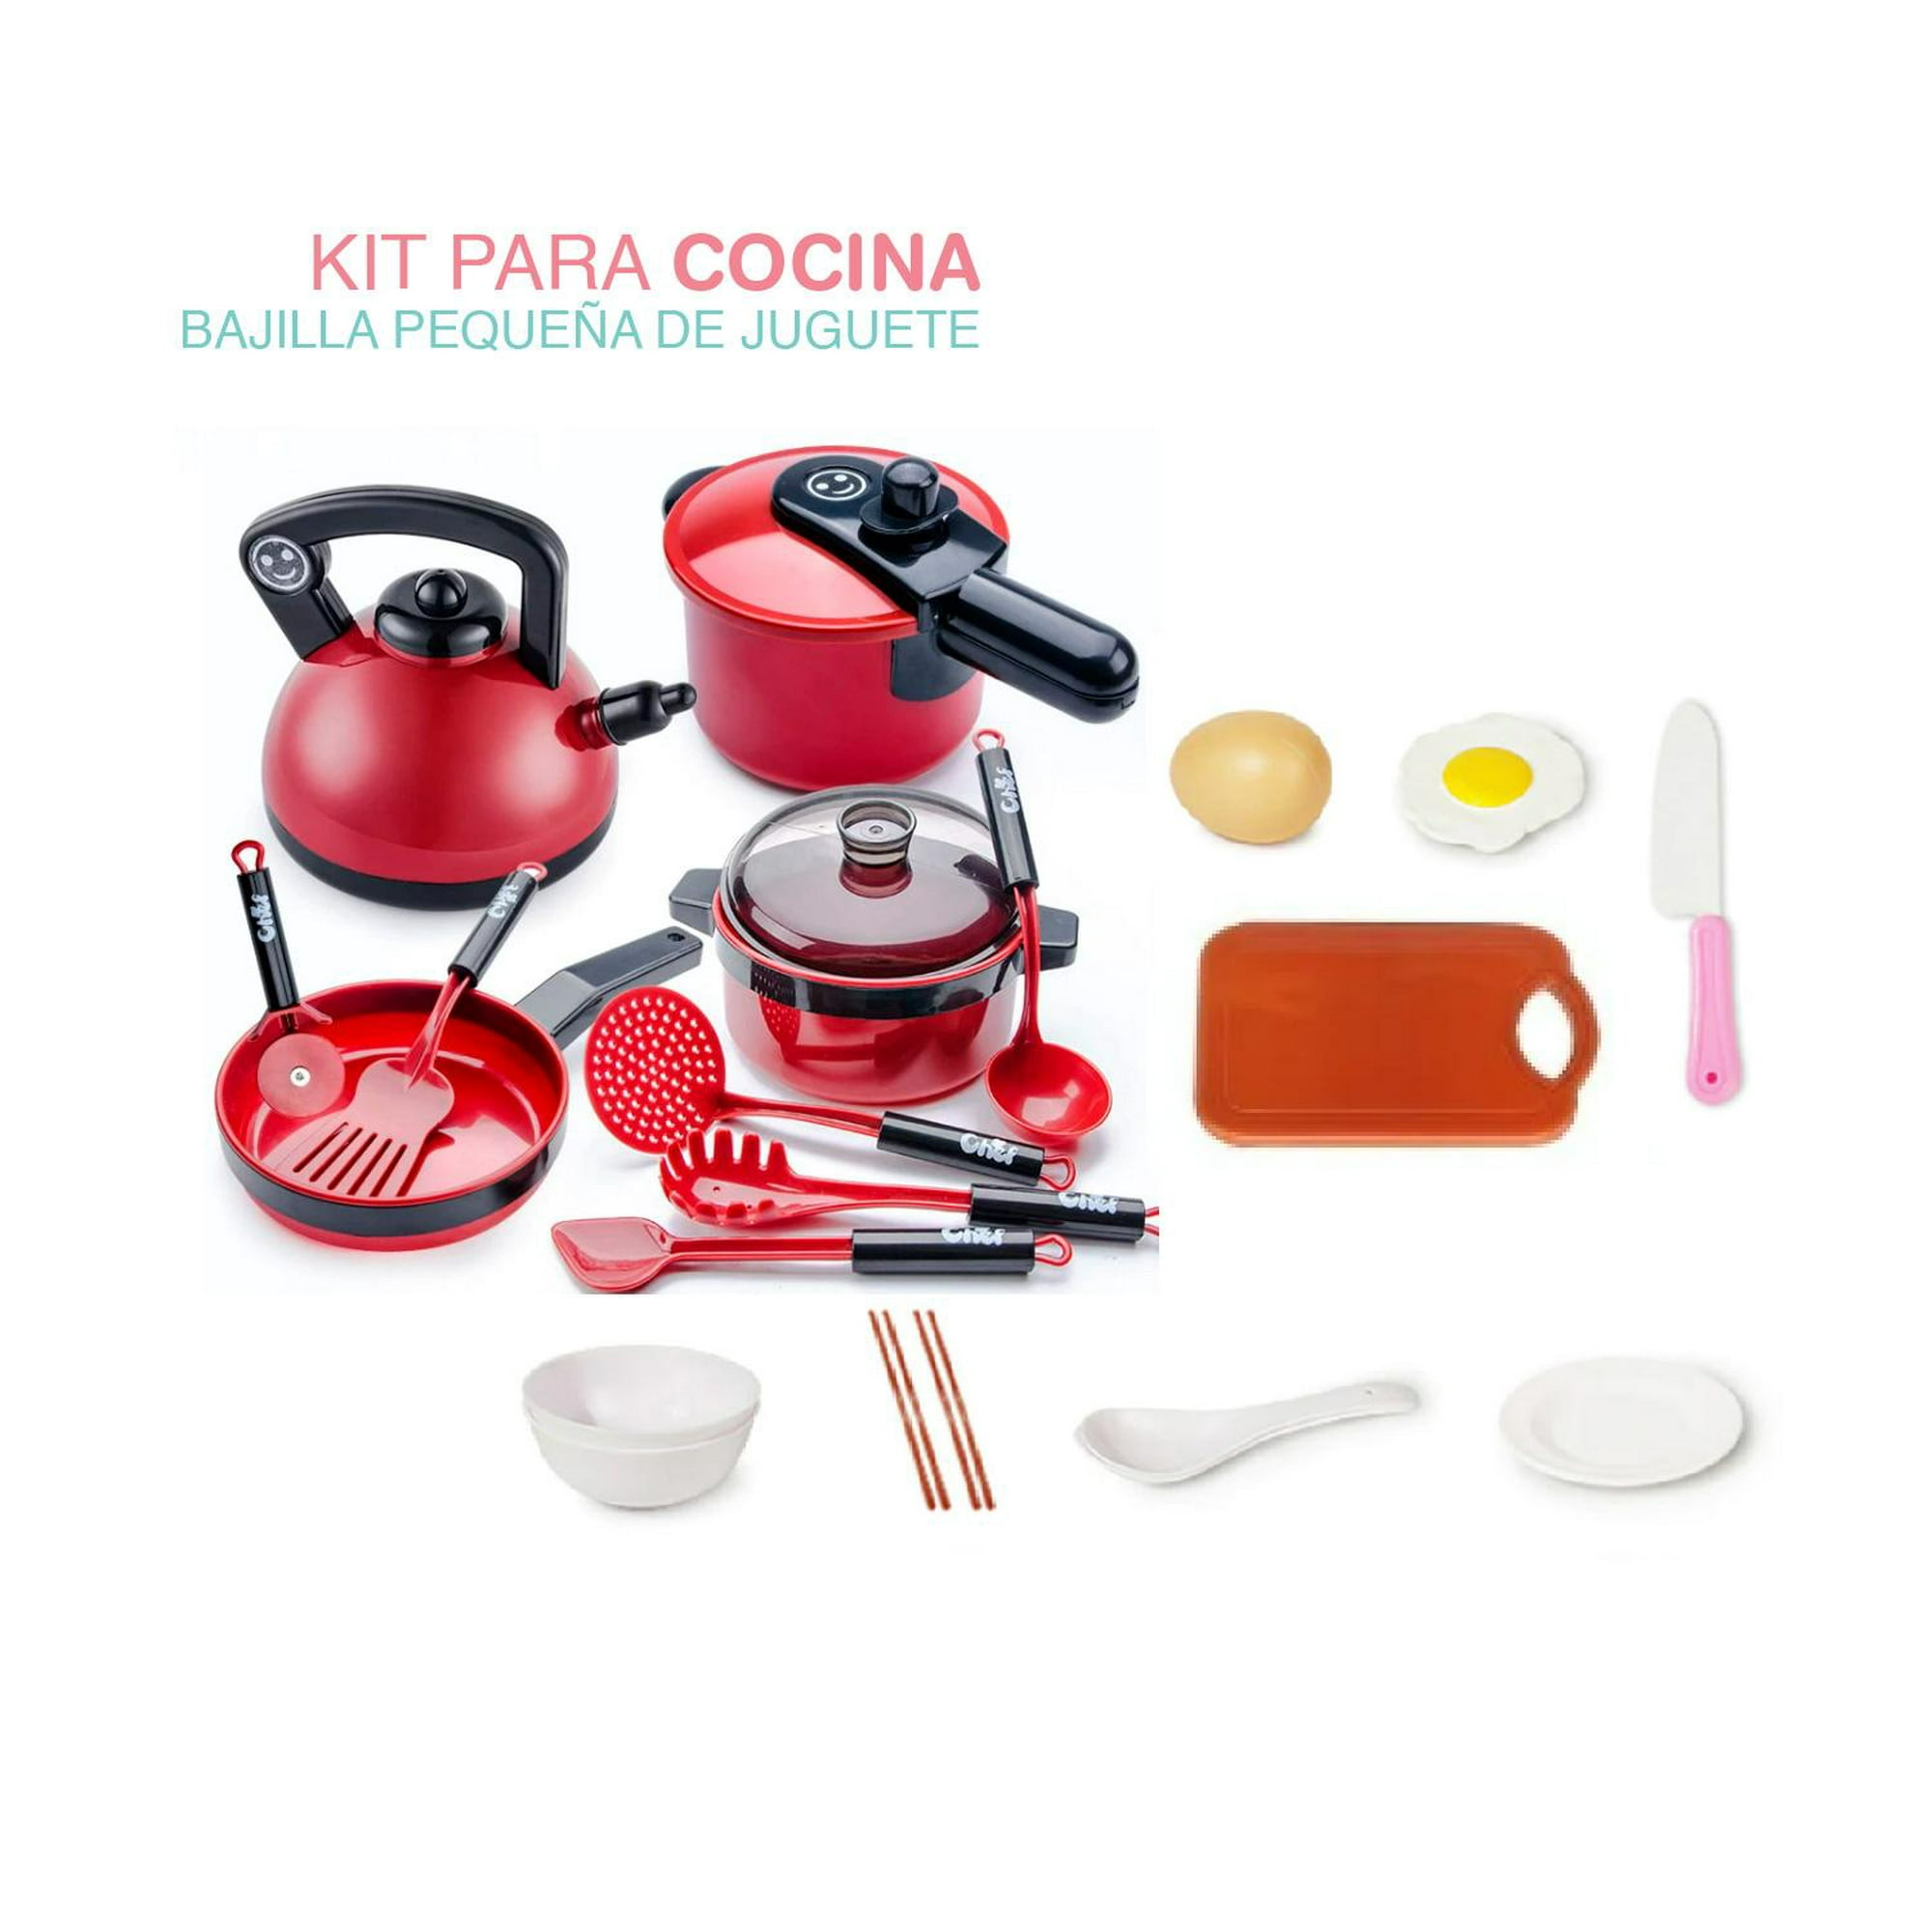 105 piezas de accesorios de juguete de cocina para niños, juego de cocina  para acampar, ollas de juego, sartenes, utensilios, utensilios de cocina